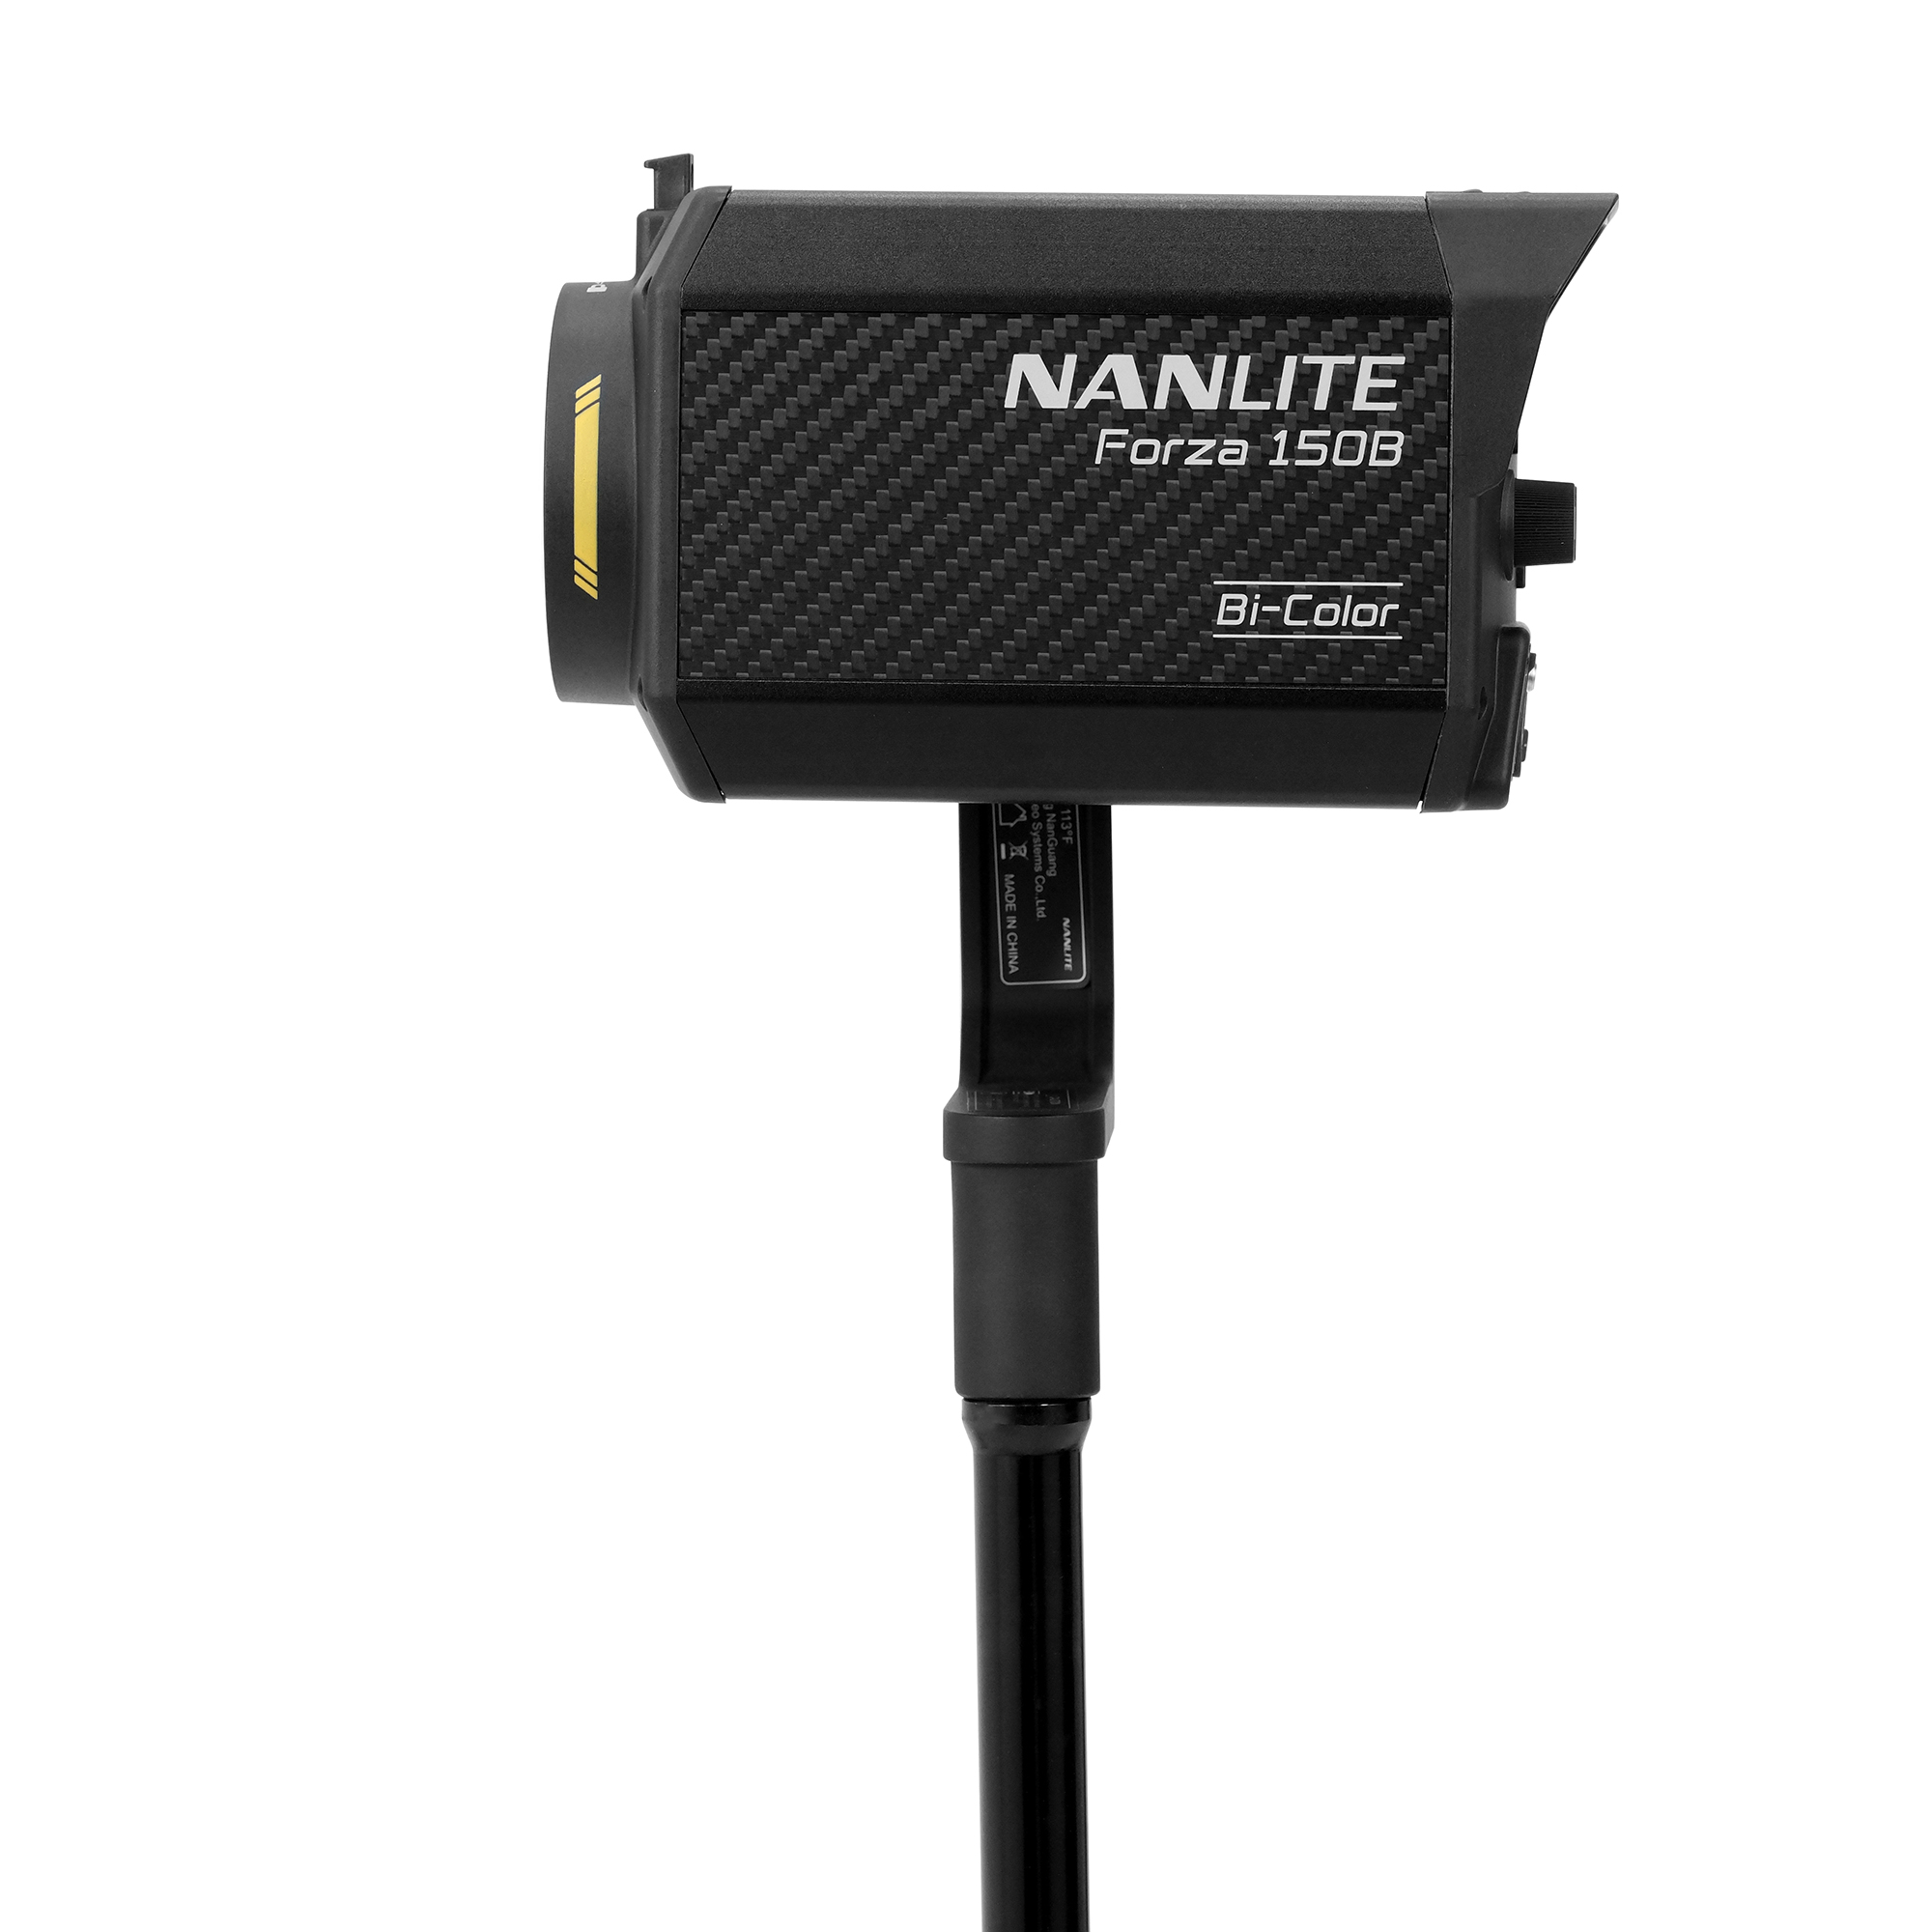 NANLITEがForza 150Bを発売 - バイカラーのCOB LEDスポットライト | CineD